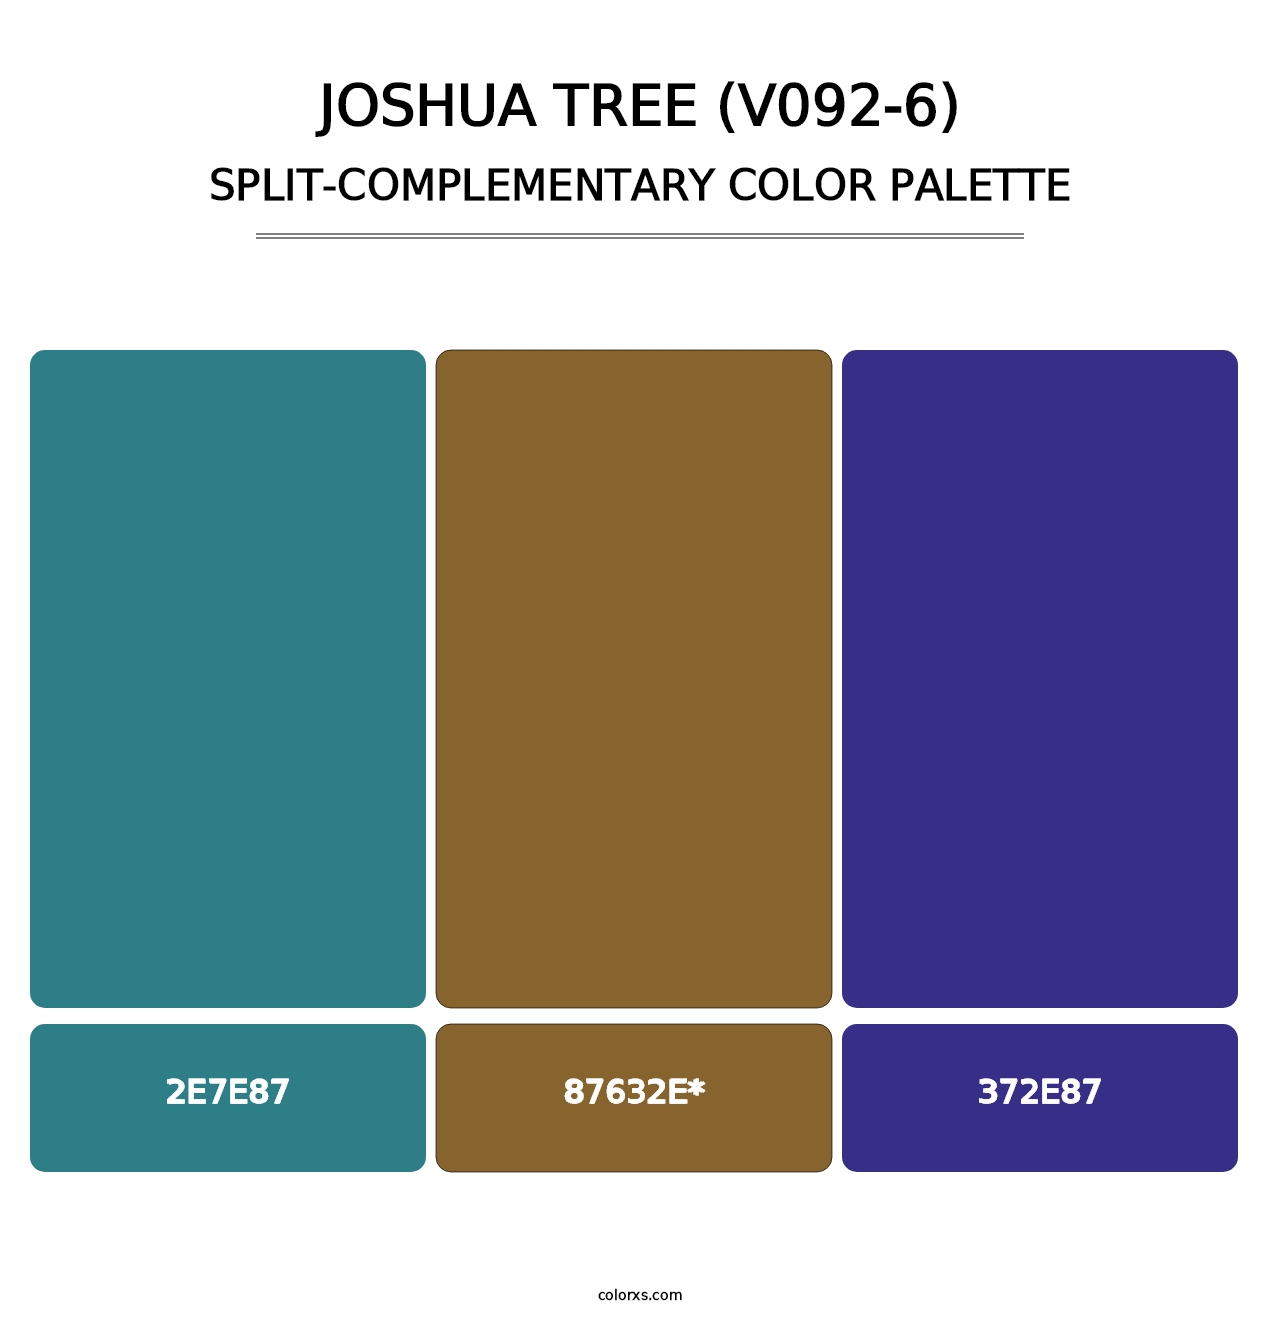 Joshua Tree (V092-6) - Split-Complementary Color Palette